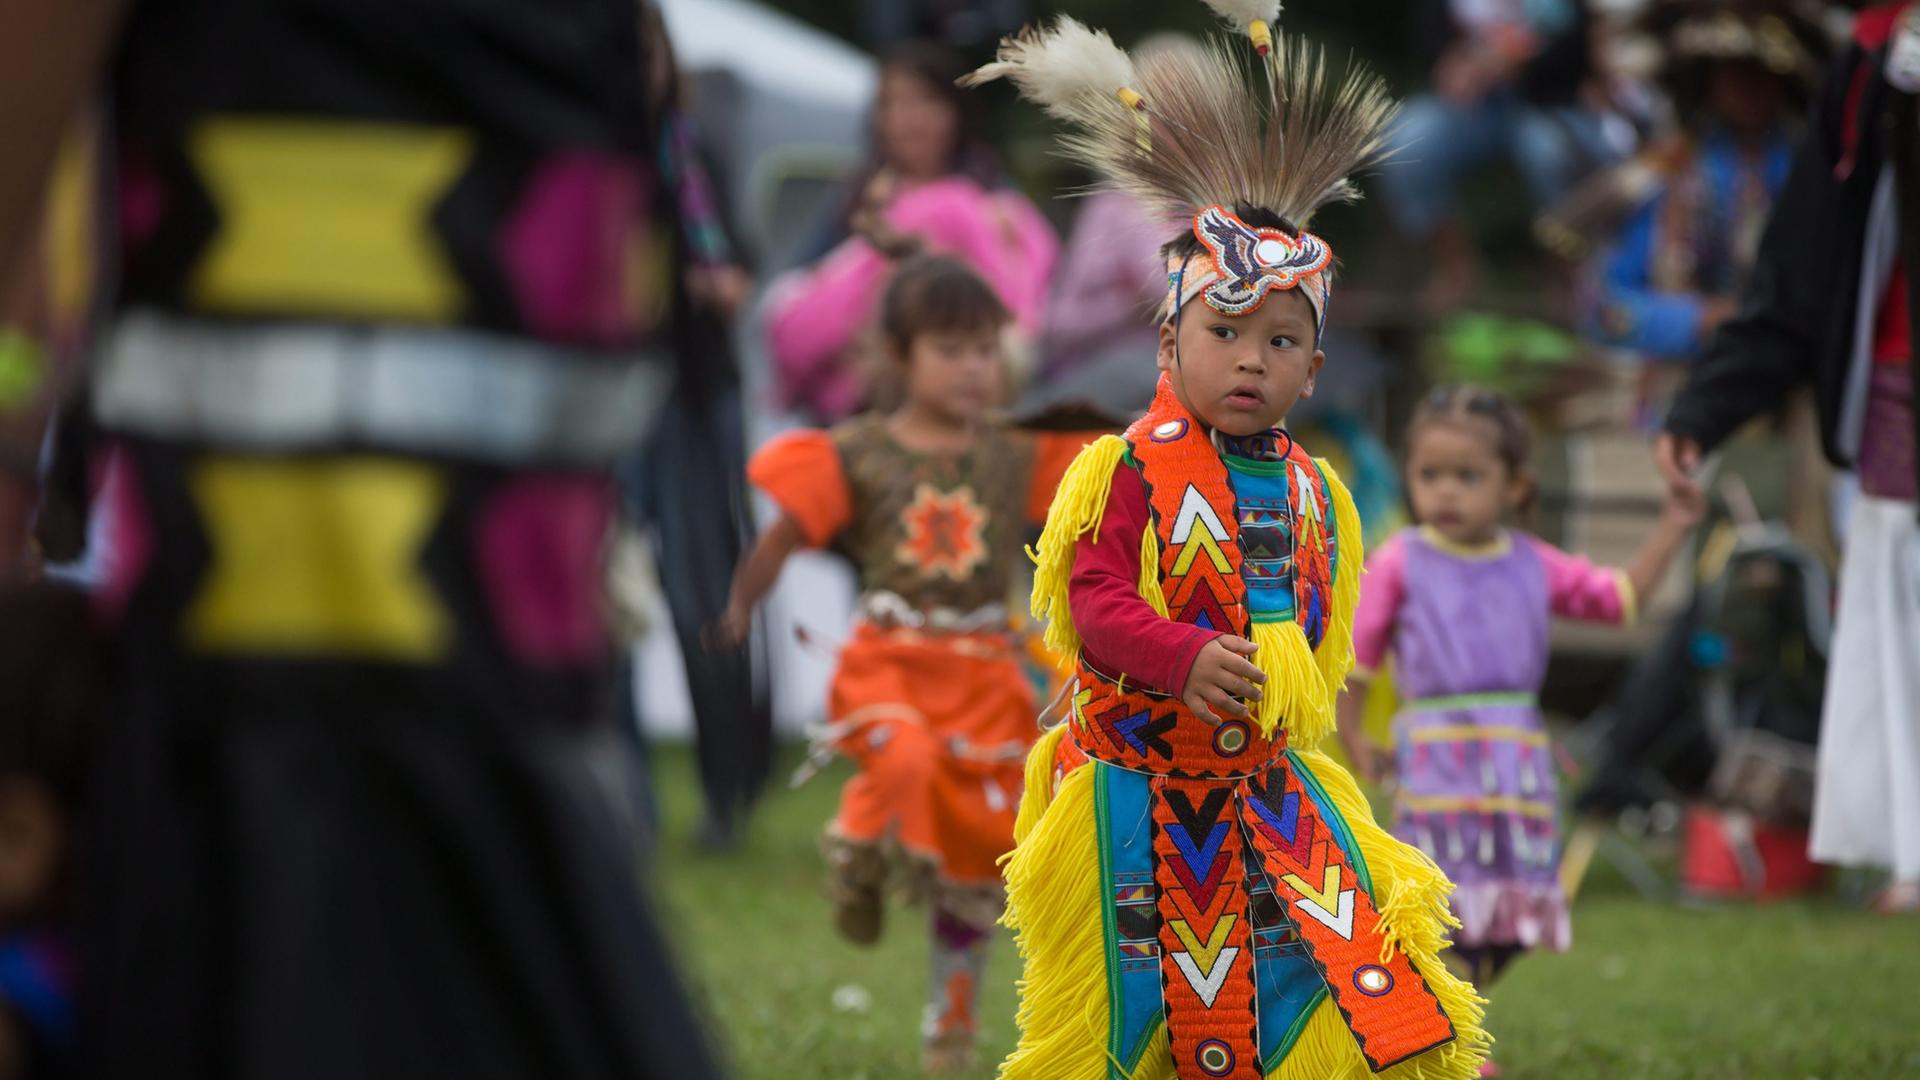 Der Junge in gelb-orangener indigener Tracht und Federn am Kopf tanzt auf einer Wiese. Dahinter unscharf zwei ebenfalls tandeznede indigene Mädchen.